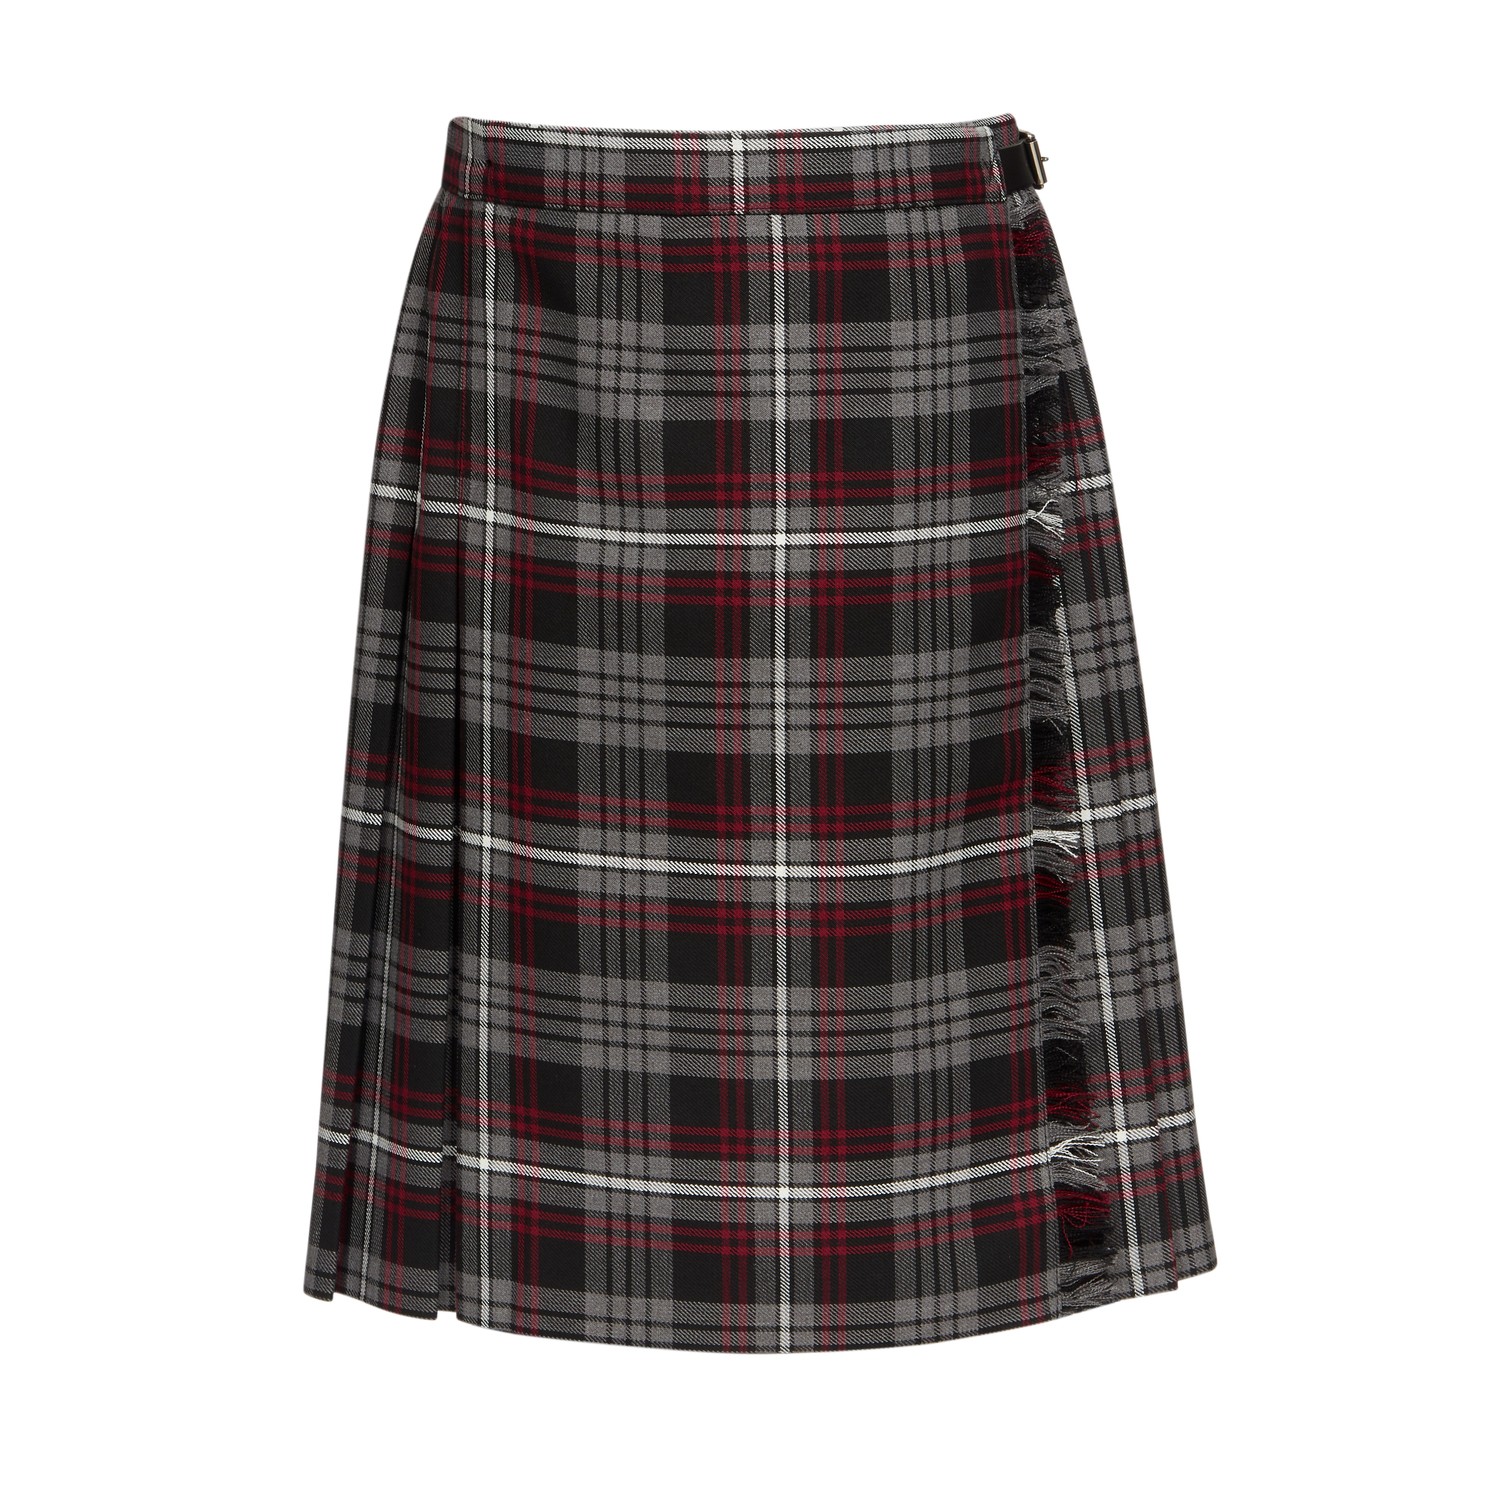 Secondary Skirt